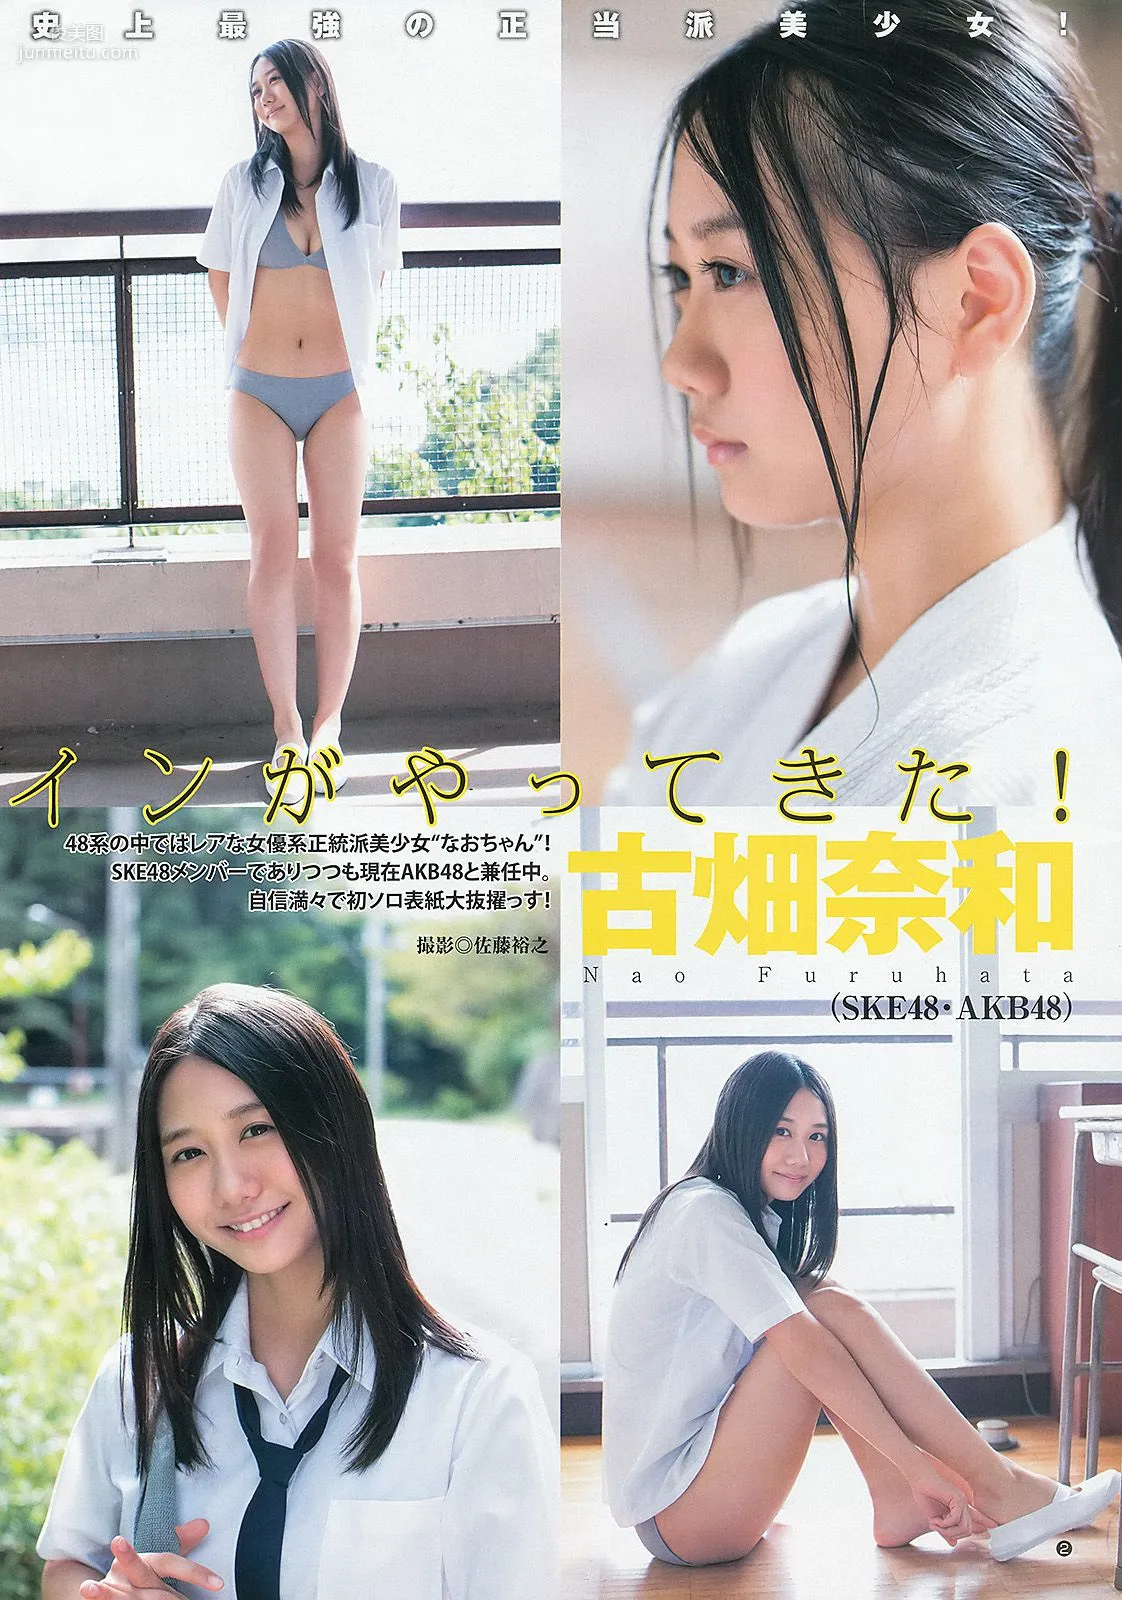 古畑奈和 入山杏奈 [Weekly Young Jump] 2013年No.46 写真杂志3